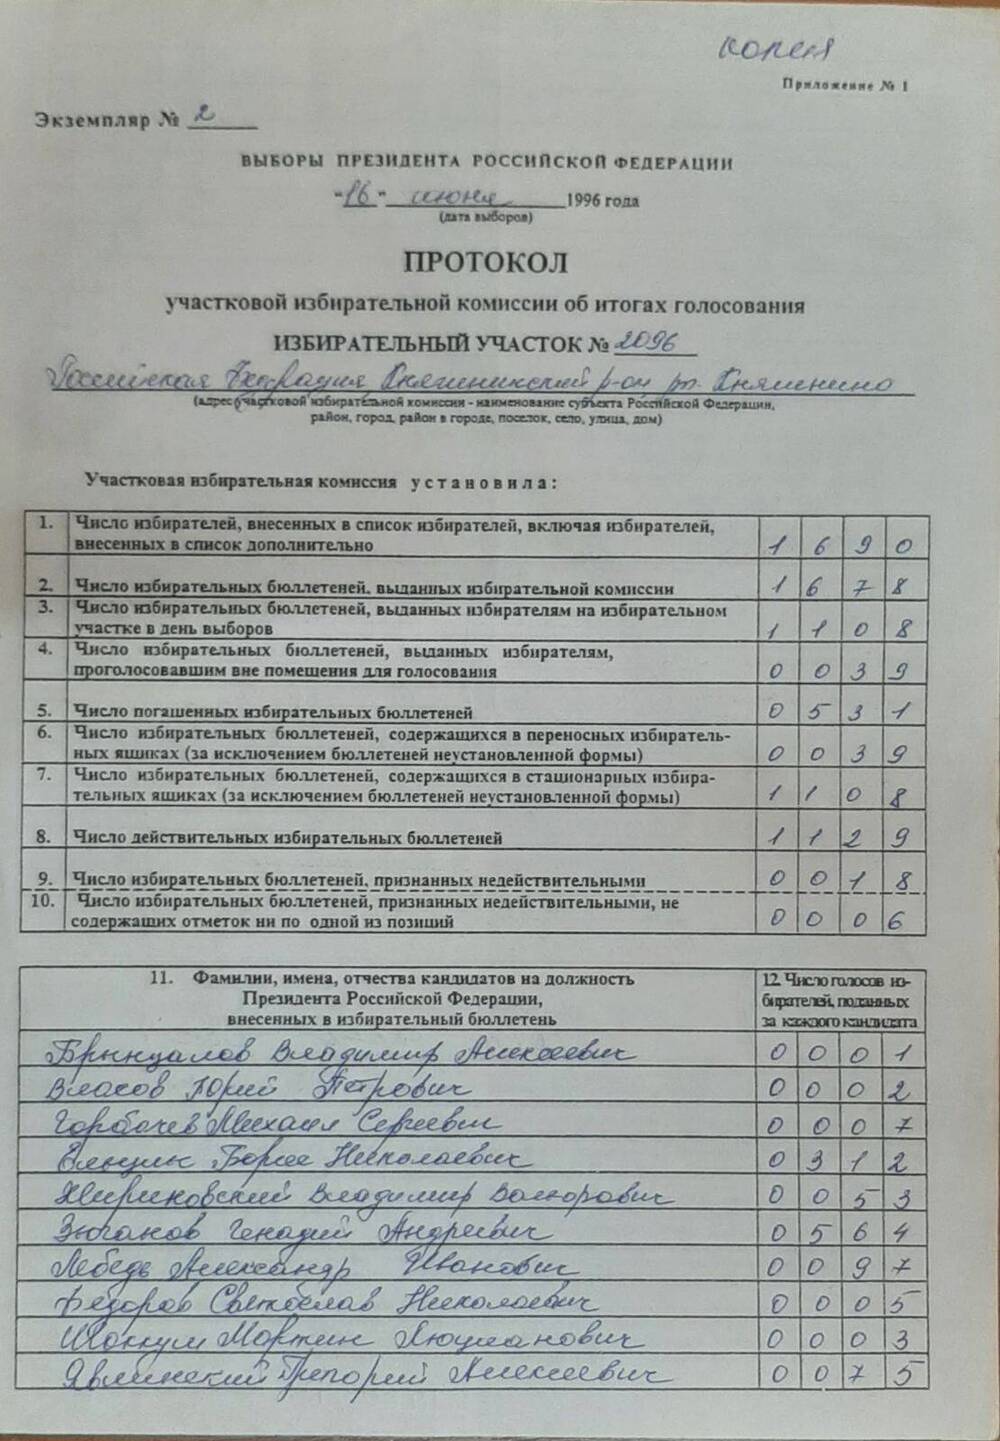 Протокол участковой избирательной комиссии об итогах голосования на избирательном участке от 16.06.1996 г.